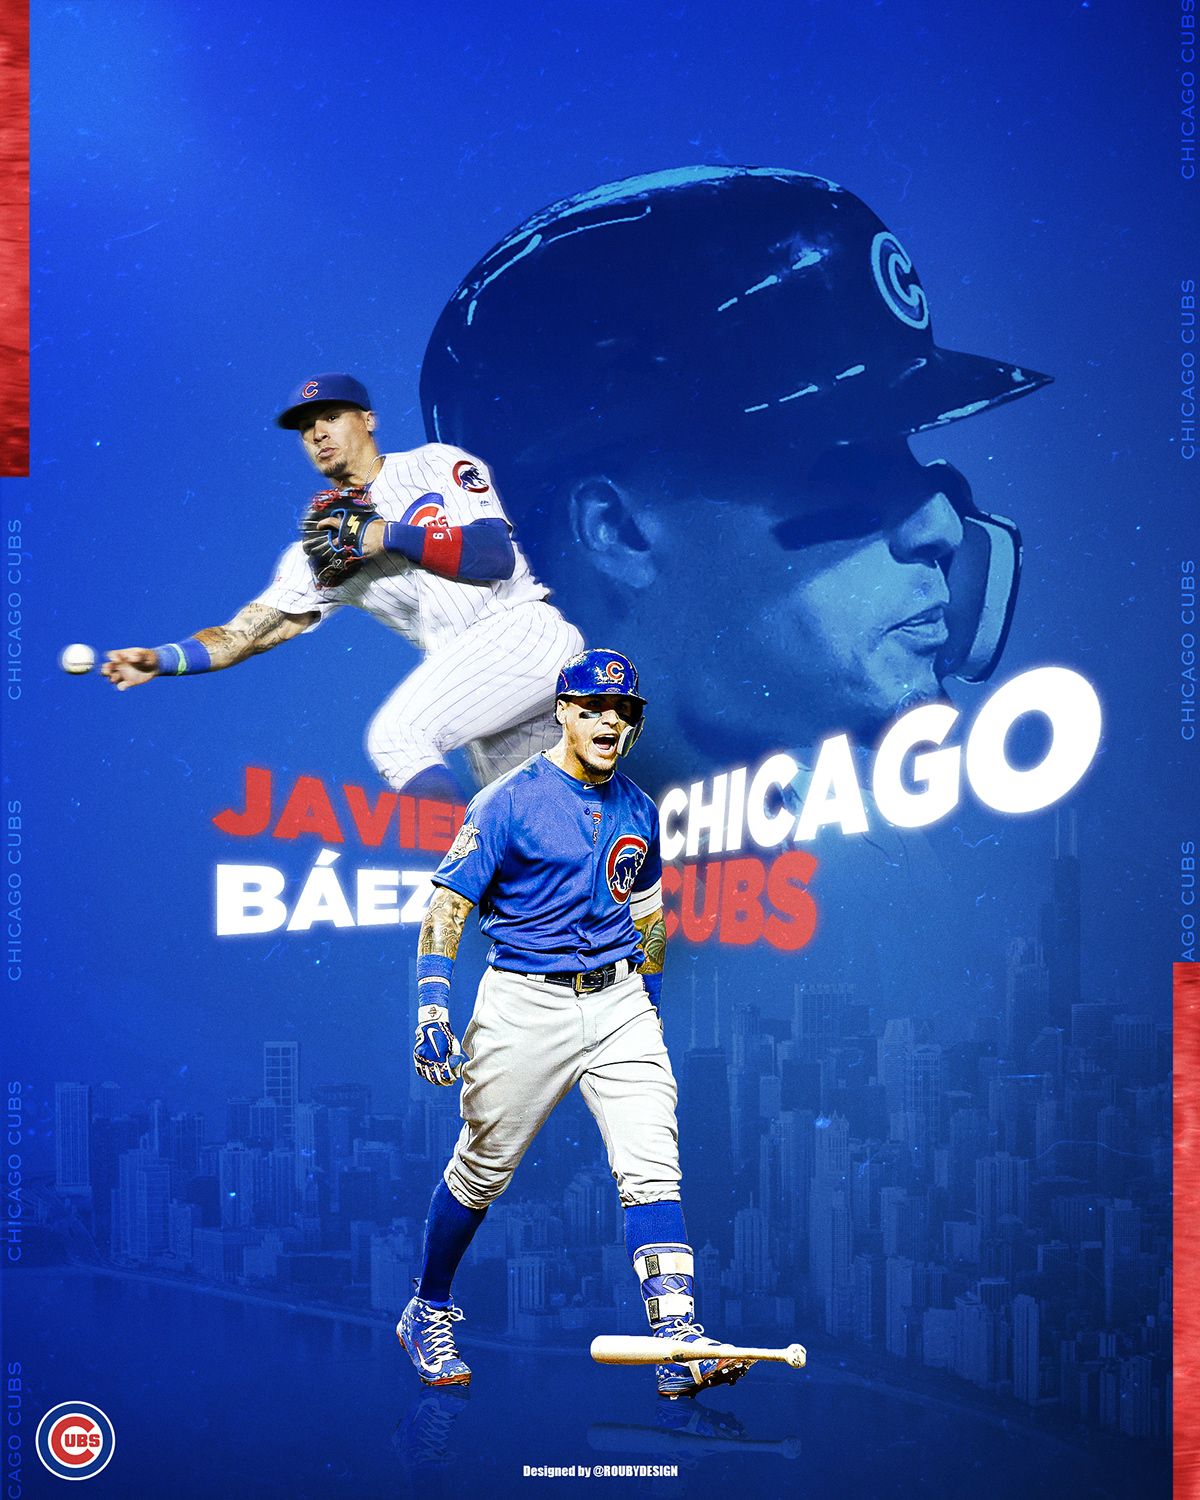 Javier Báez // Chicago Cubs. Chicago cubs wallpaper, Chicago cubs baseball, Mlb chicago cubs